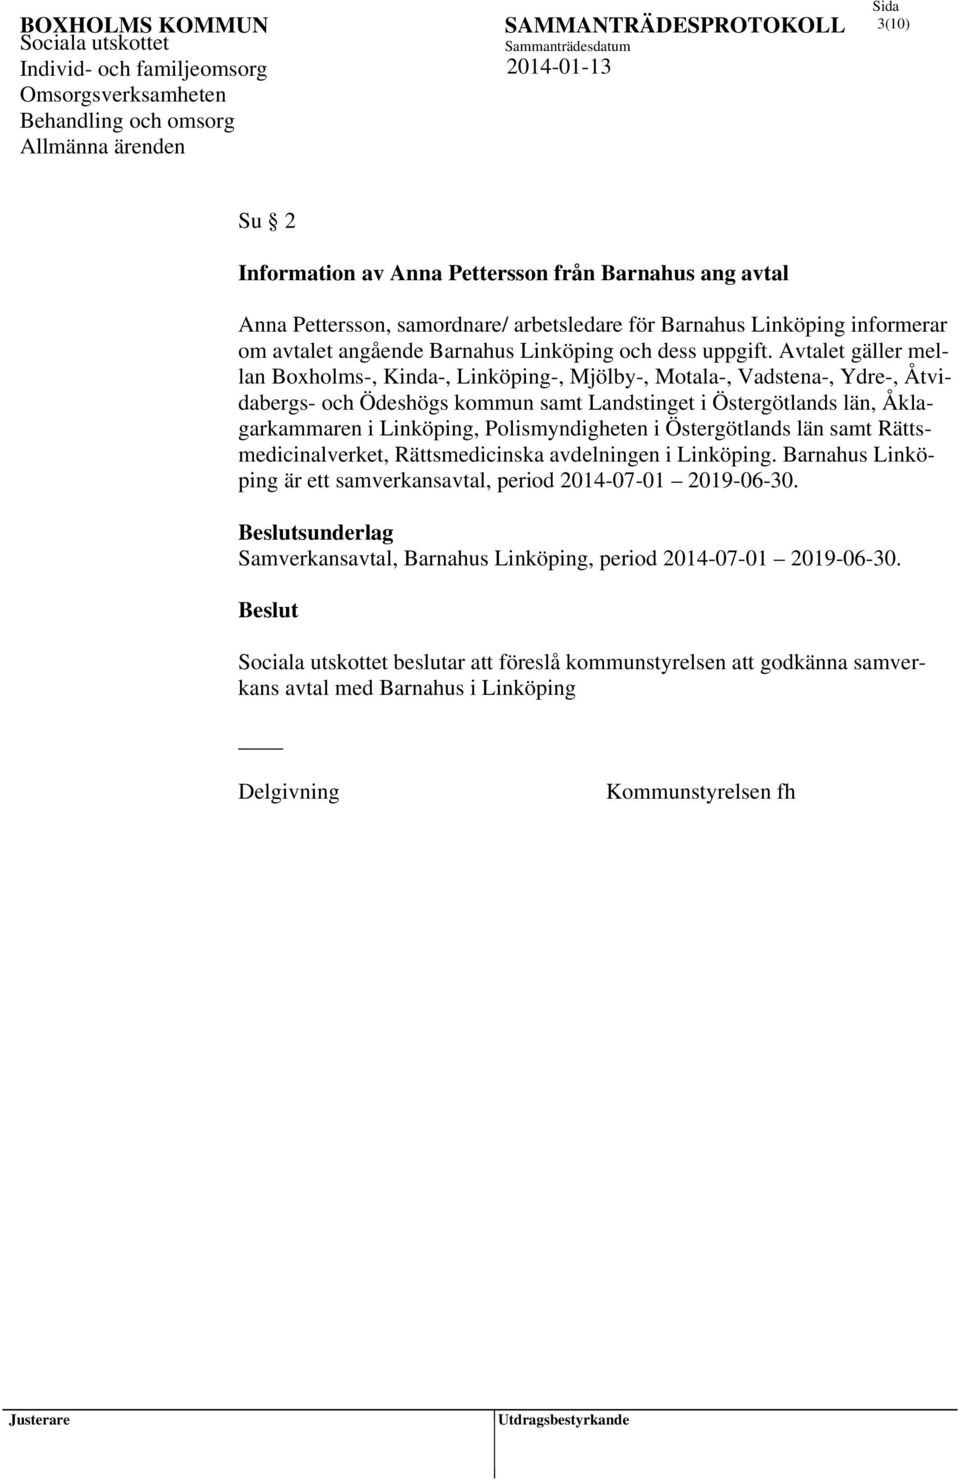 Avtalet gäller mellan Boxholms-, Kinda-, Linköping-, Mjölby-, Motala-, Vadstena-, Ydre-, Åtvidabergs- och Ödeshögs kommun samt Landstinget i Östergötlands län, Åklagarkammaren i Linköping,